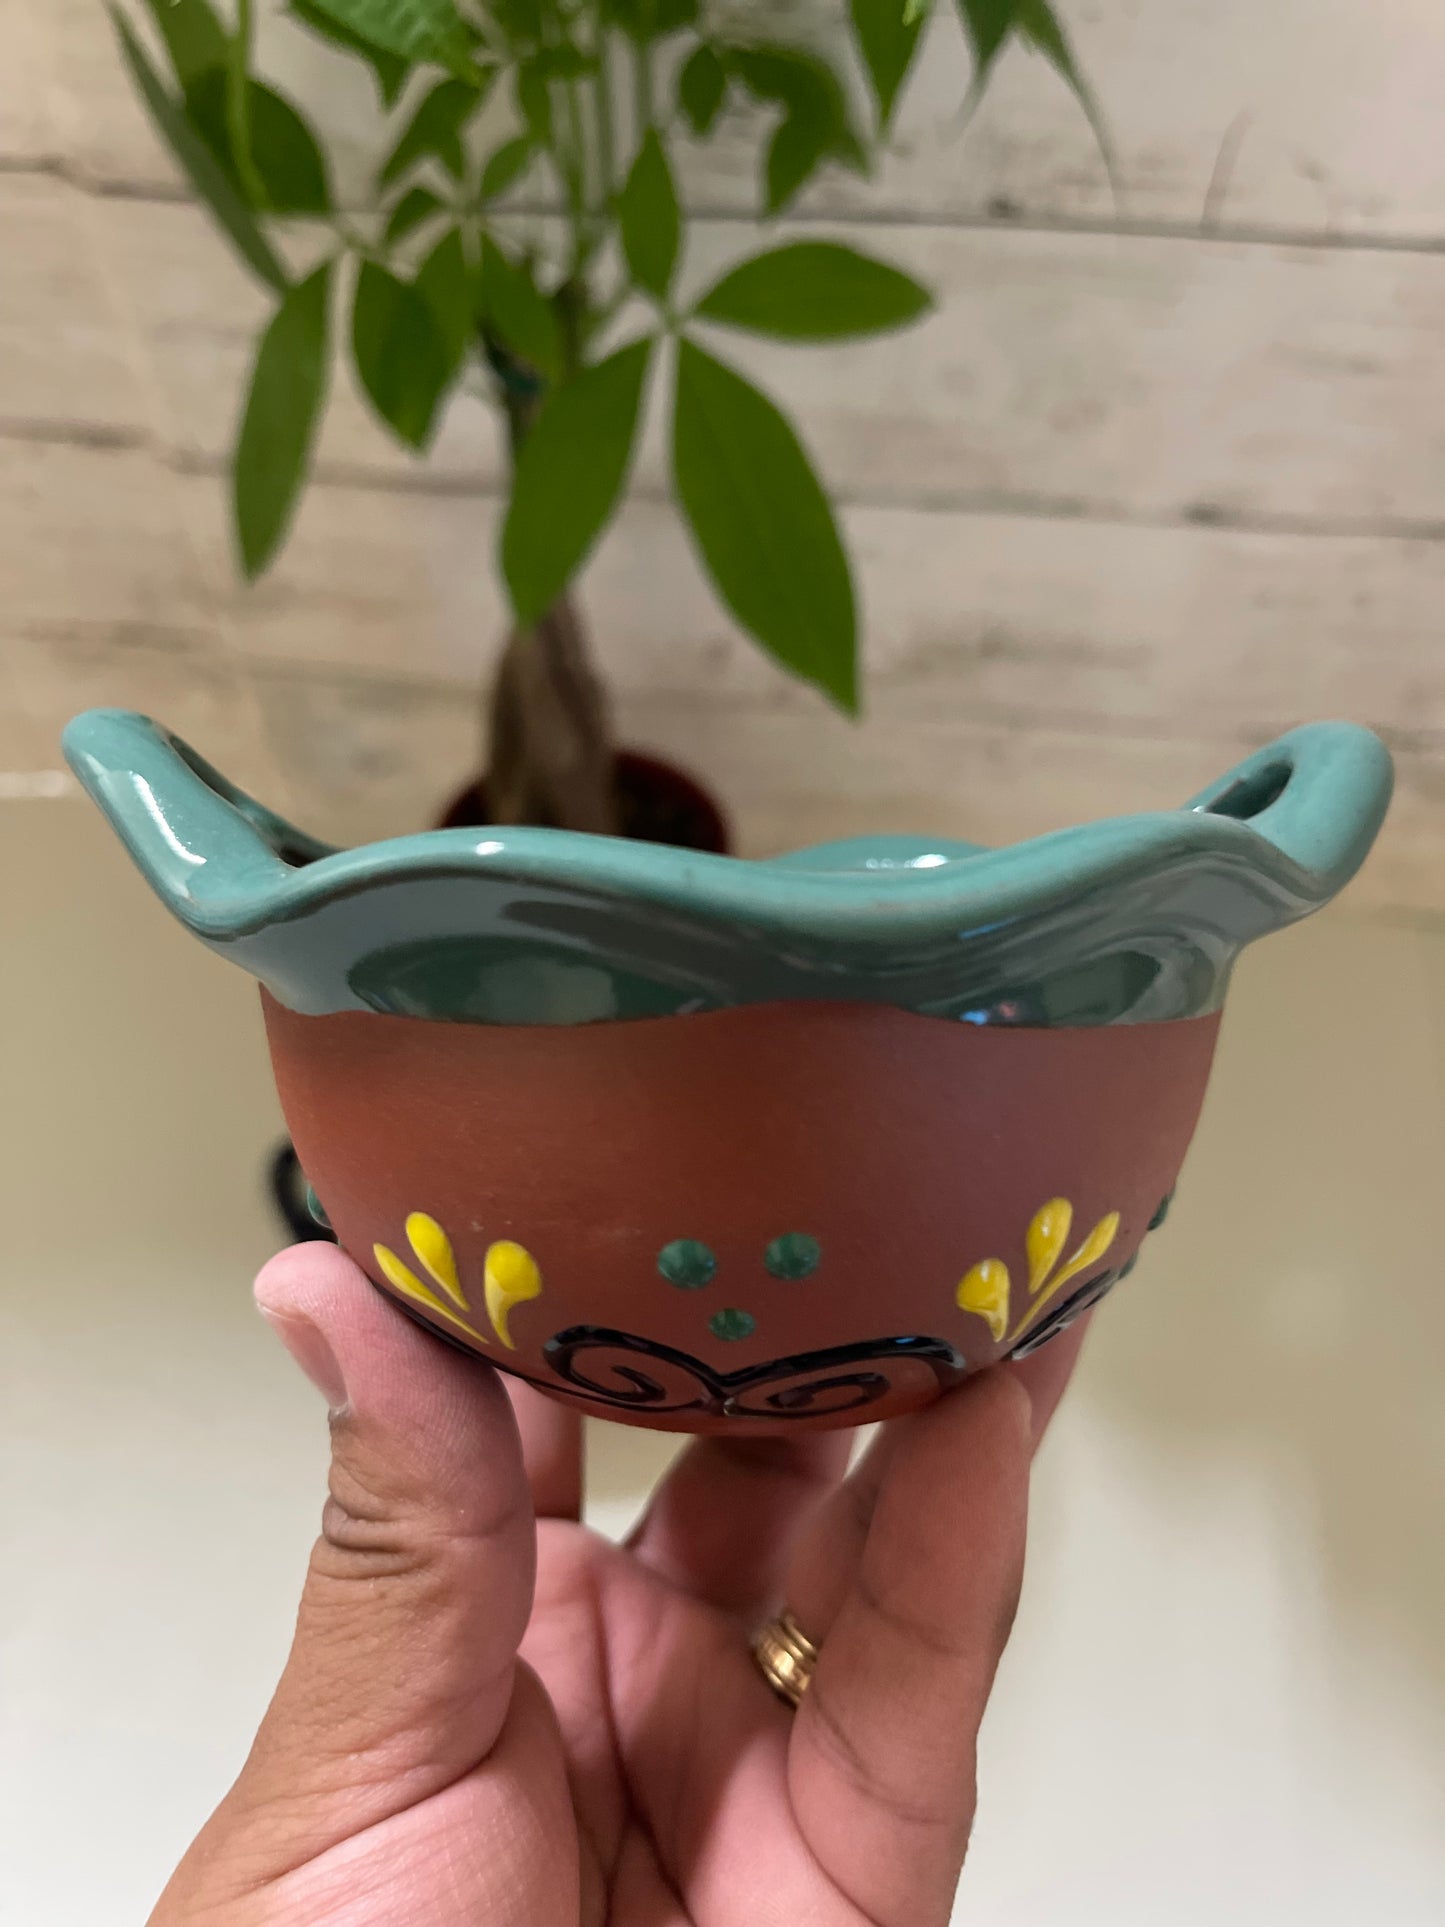 Mexican handmade hand painted pottery 4” cazuelita bowls- saleros de barro hechos a mano